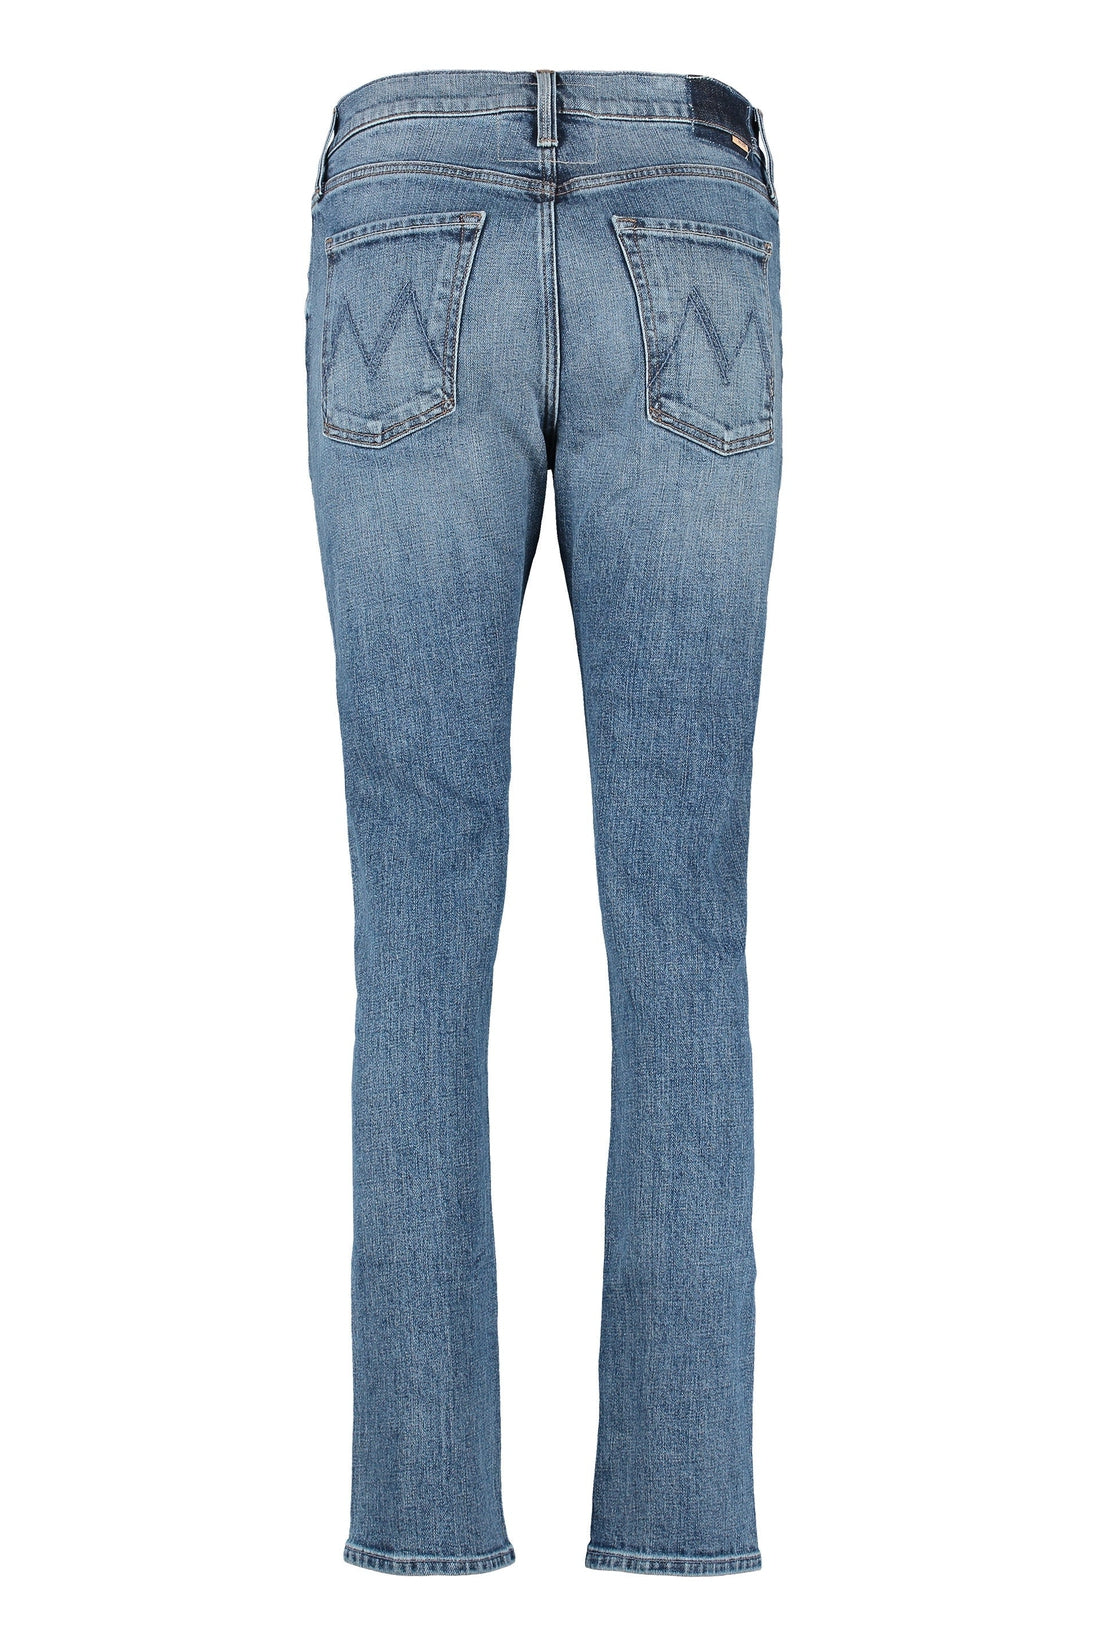 Mother-OUTLET-SALE-The Proper 5-pocket jeans-ARCHIVIST